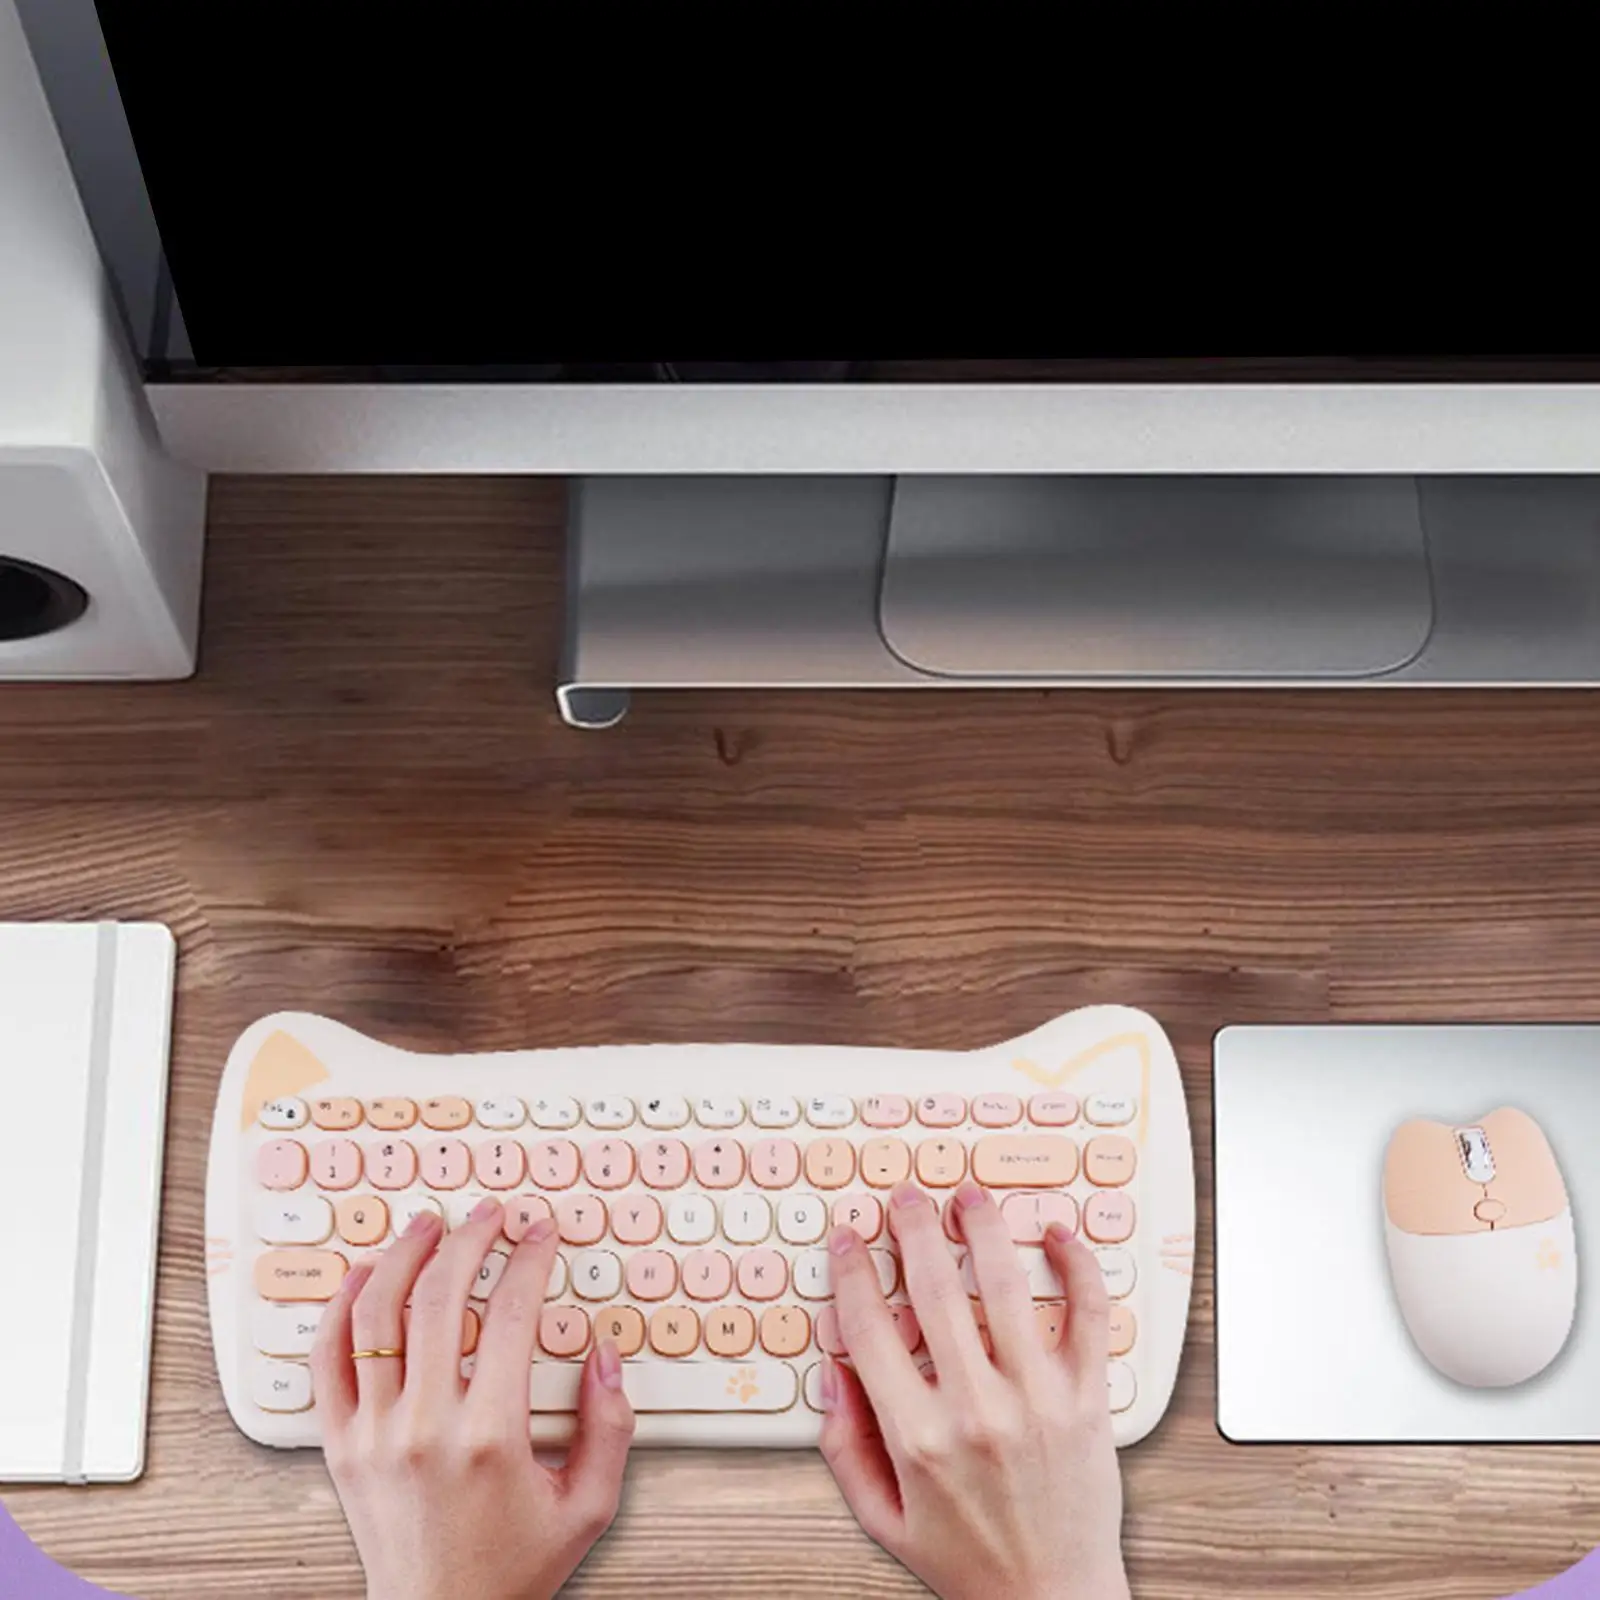 Cute 2.4G Gaming Keyboard Mouse Set 84 Keys Laptop for Windows 7 Mac OS x